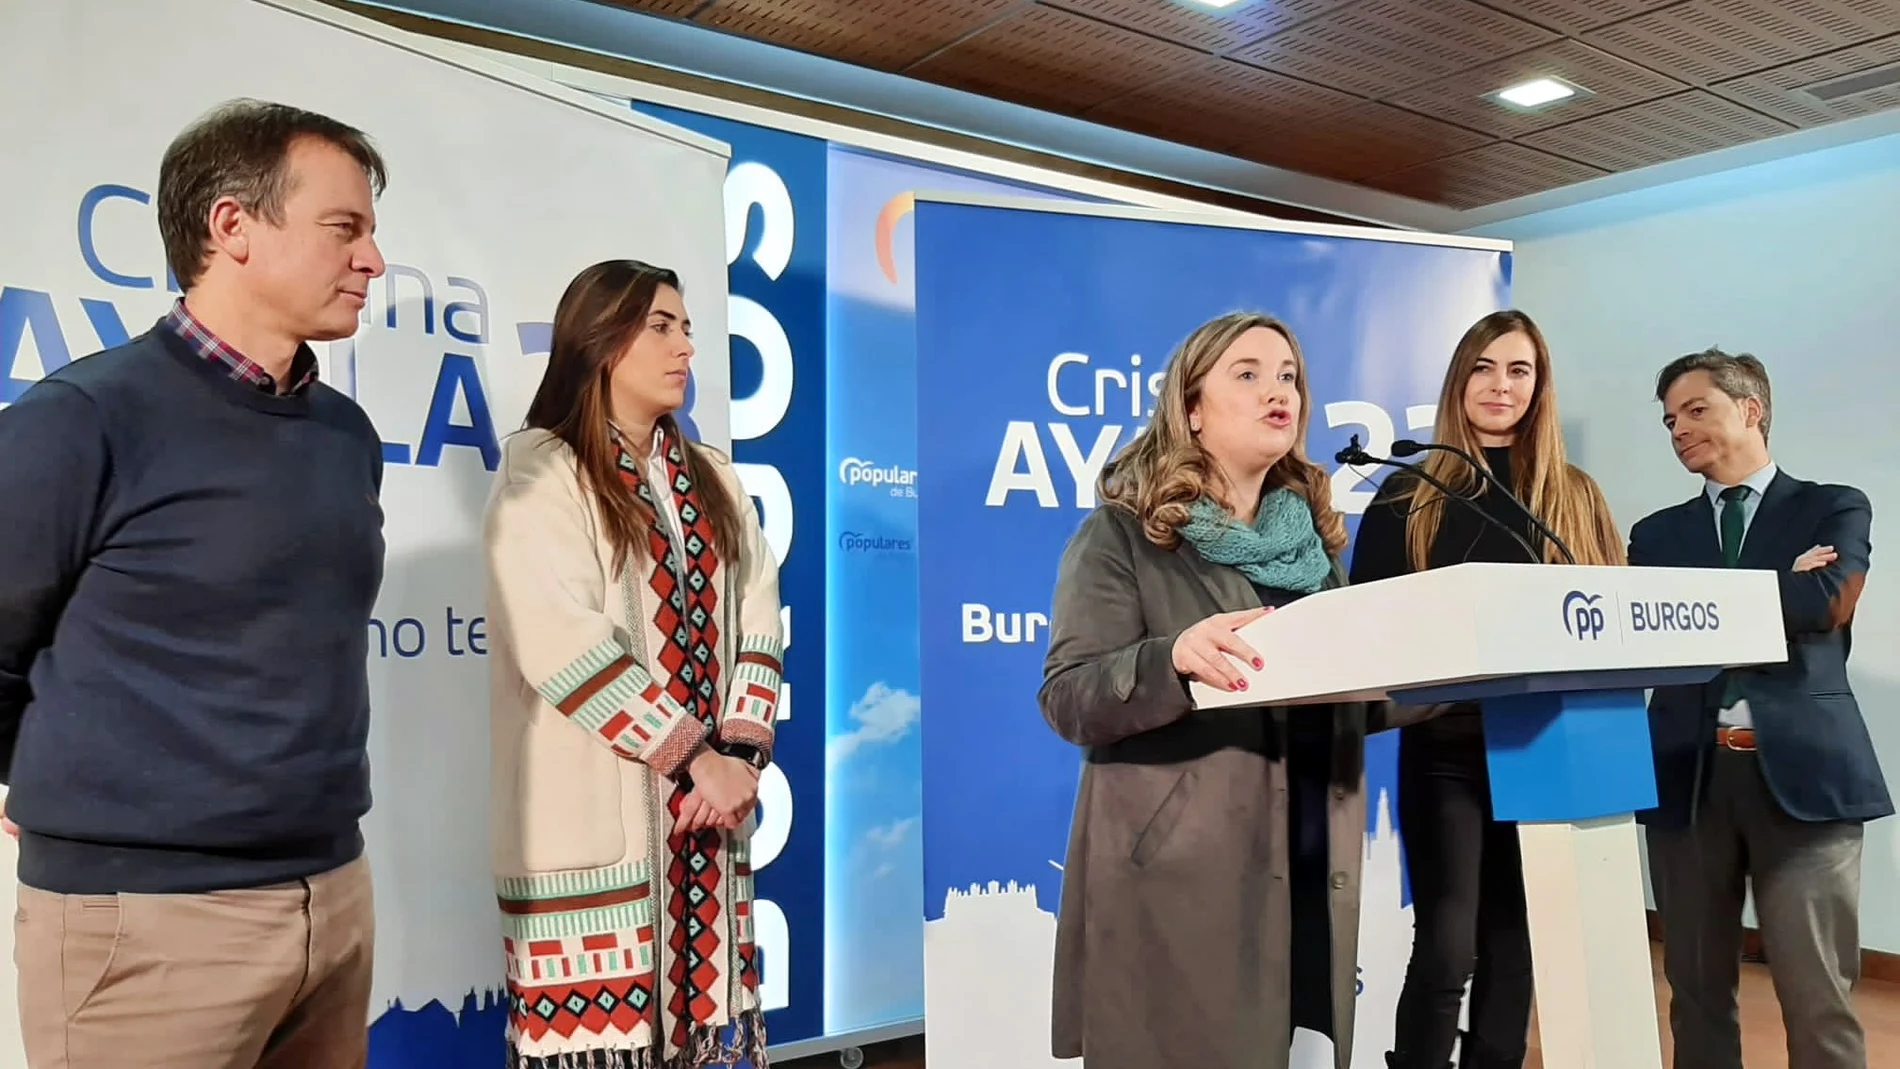 Cristina Ayala presenta la precampaña del PP de Burgos